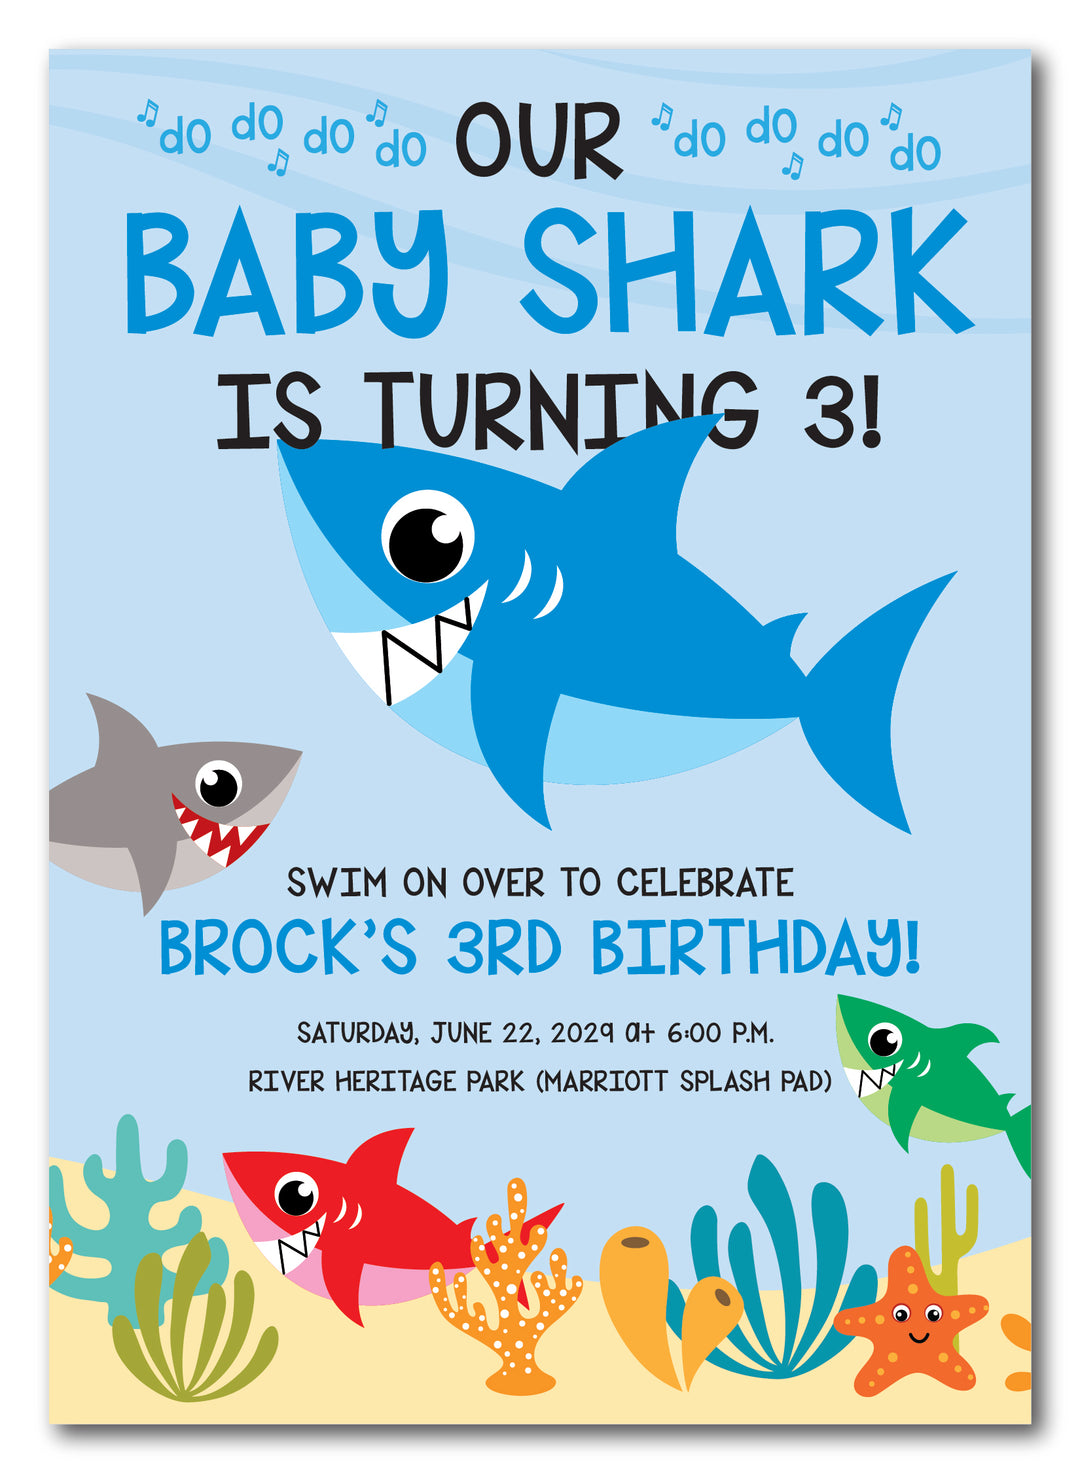 The Baby Shark Birthday Party Invitation